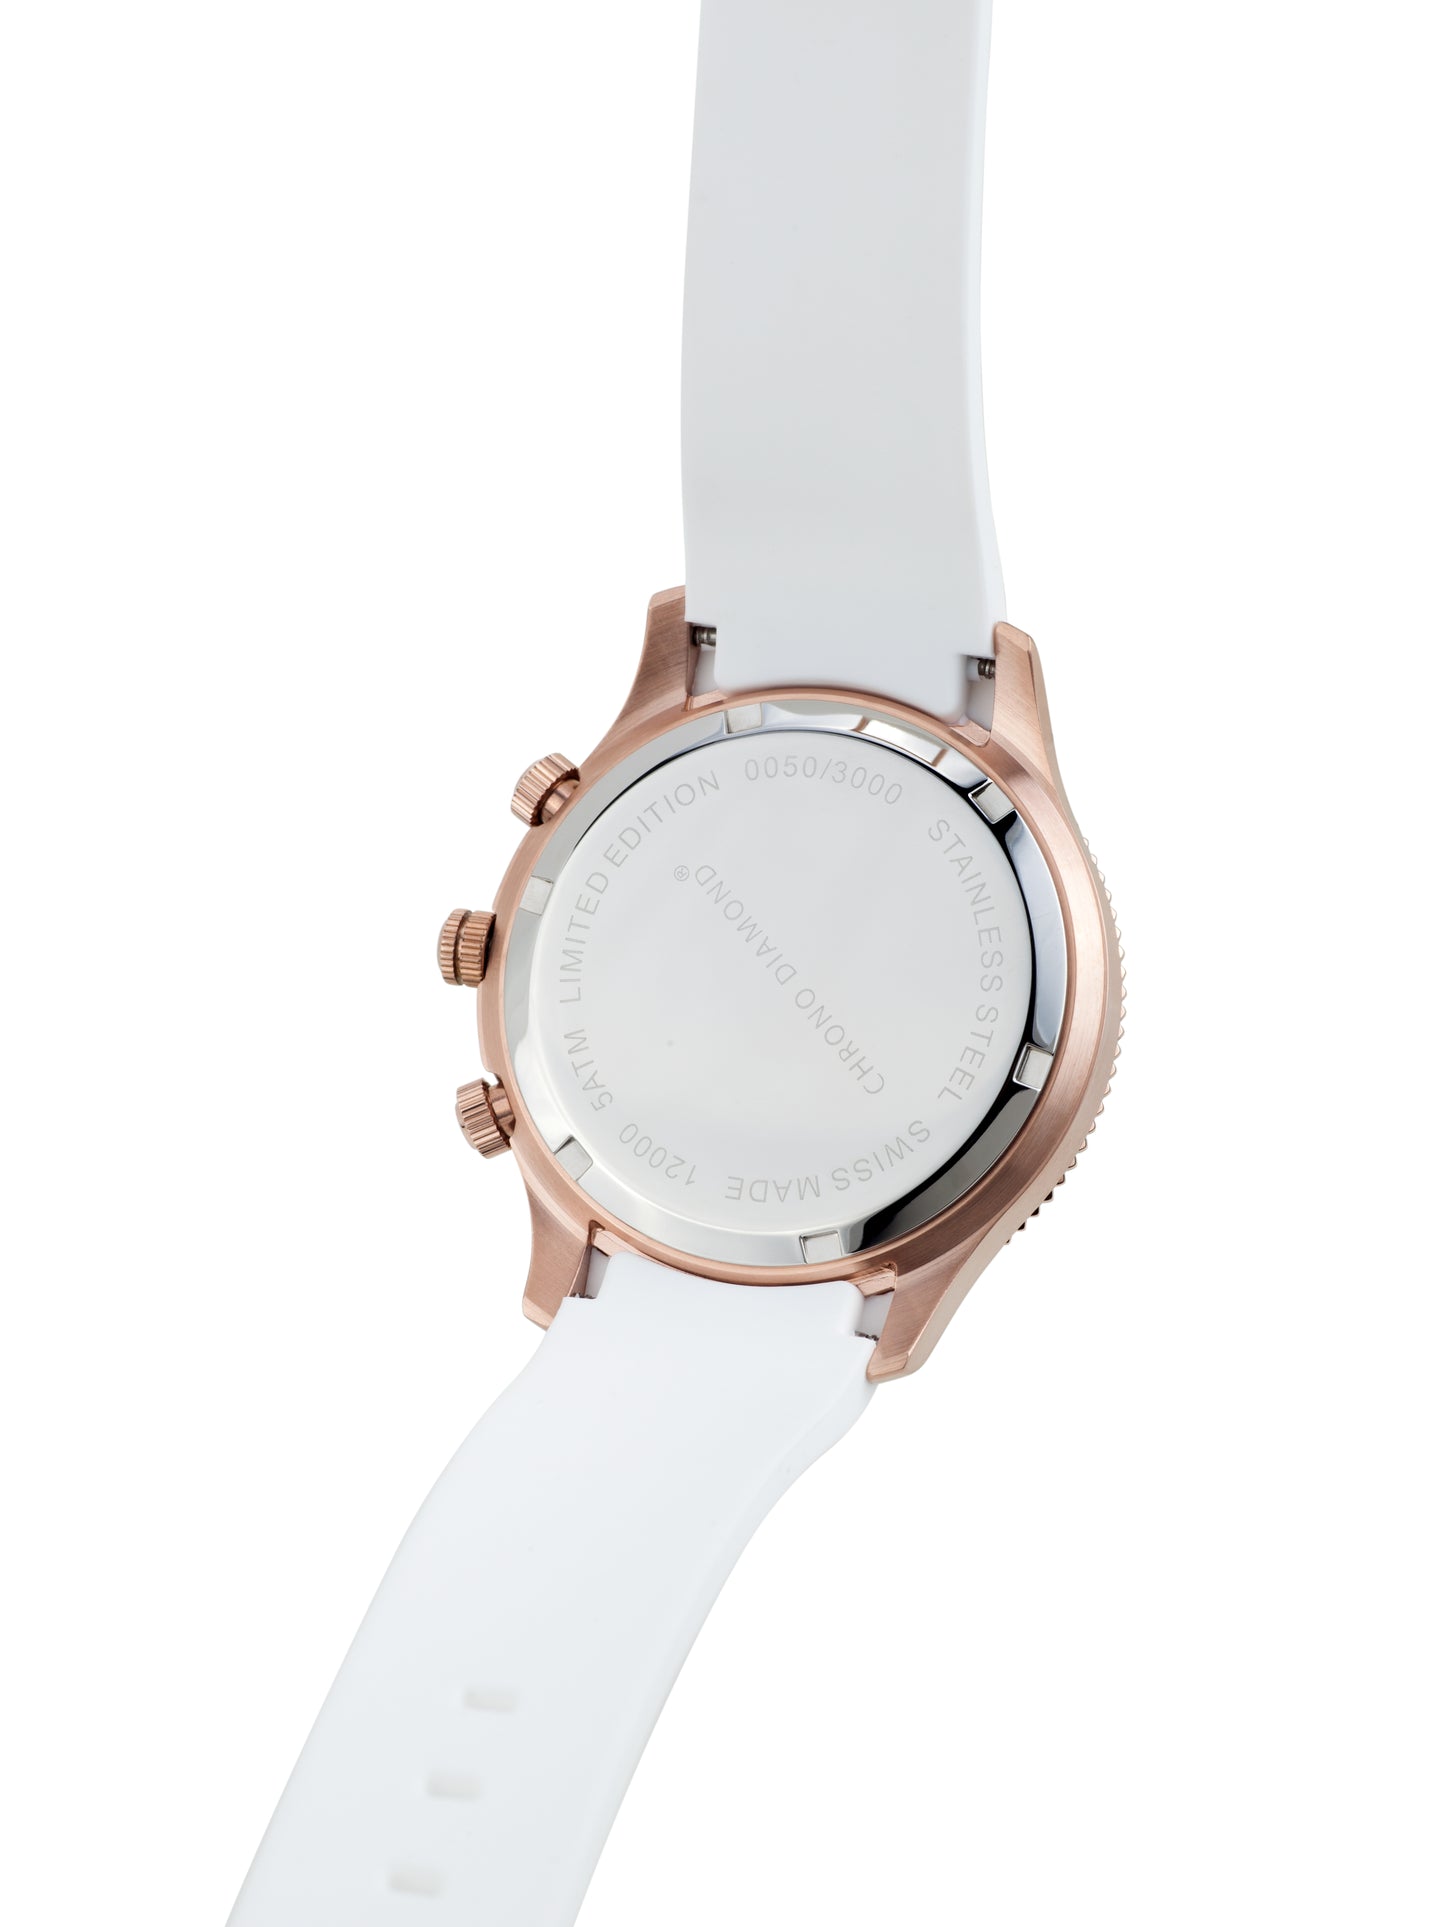 Automatic watches — Okeanos — Chrono Diamond — rosegold IP white